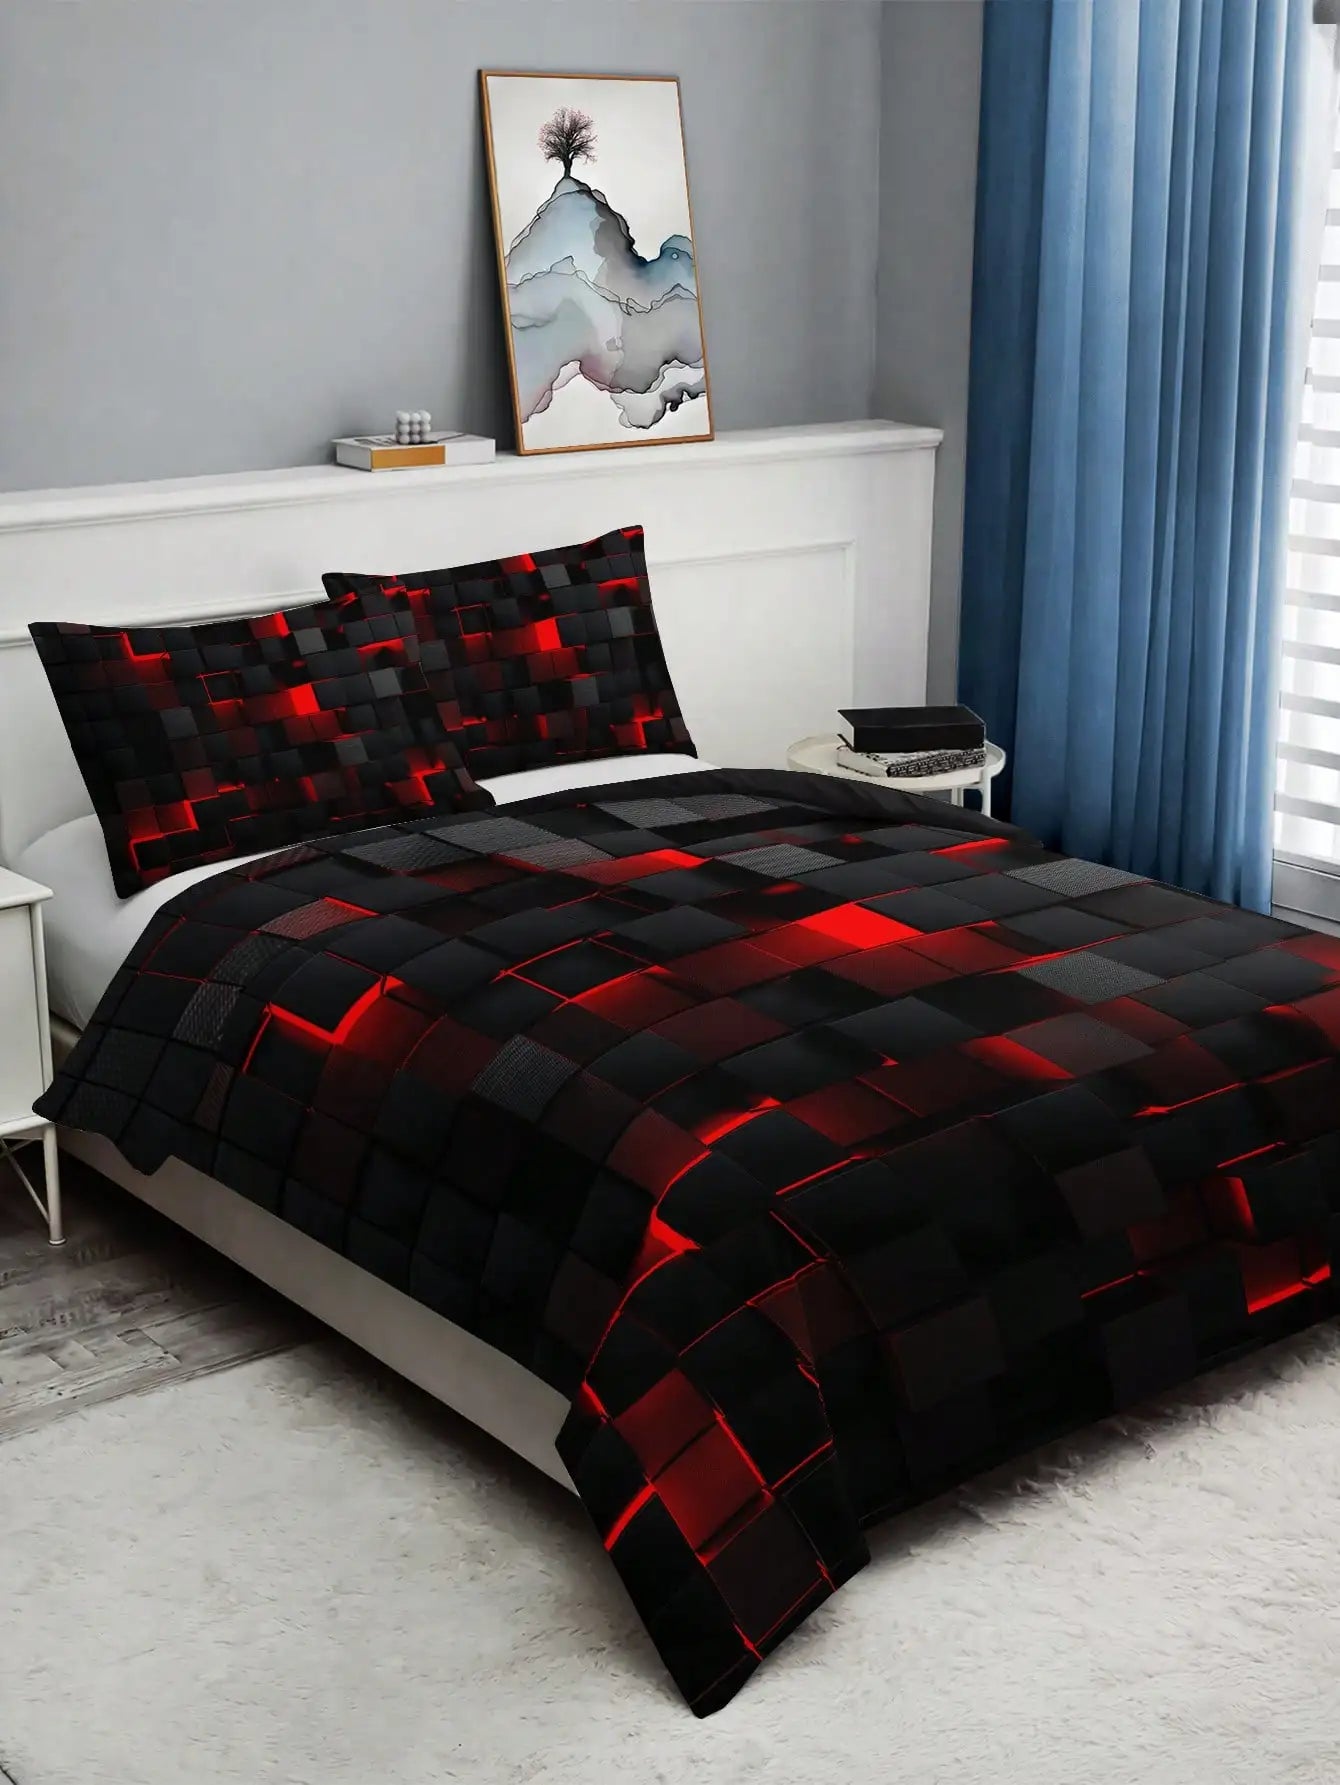 Tehnološki stil crvene rešetke kompleta za pokriće, uključujući 1 kombinirani poklopac i 2 jastučne kocke pogodne za uporabu kuće i spavaonice